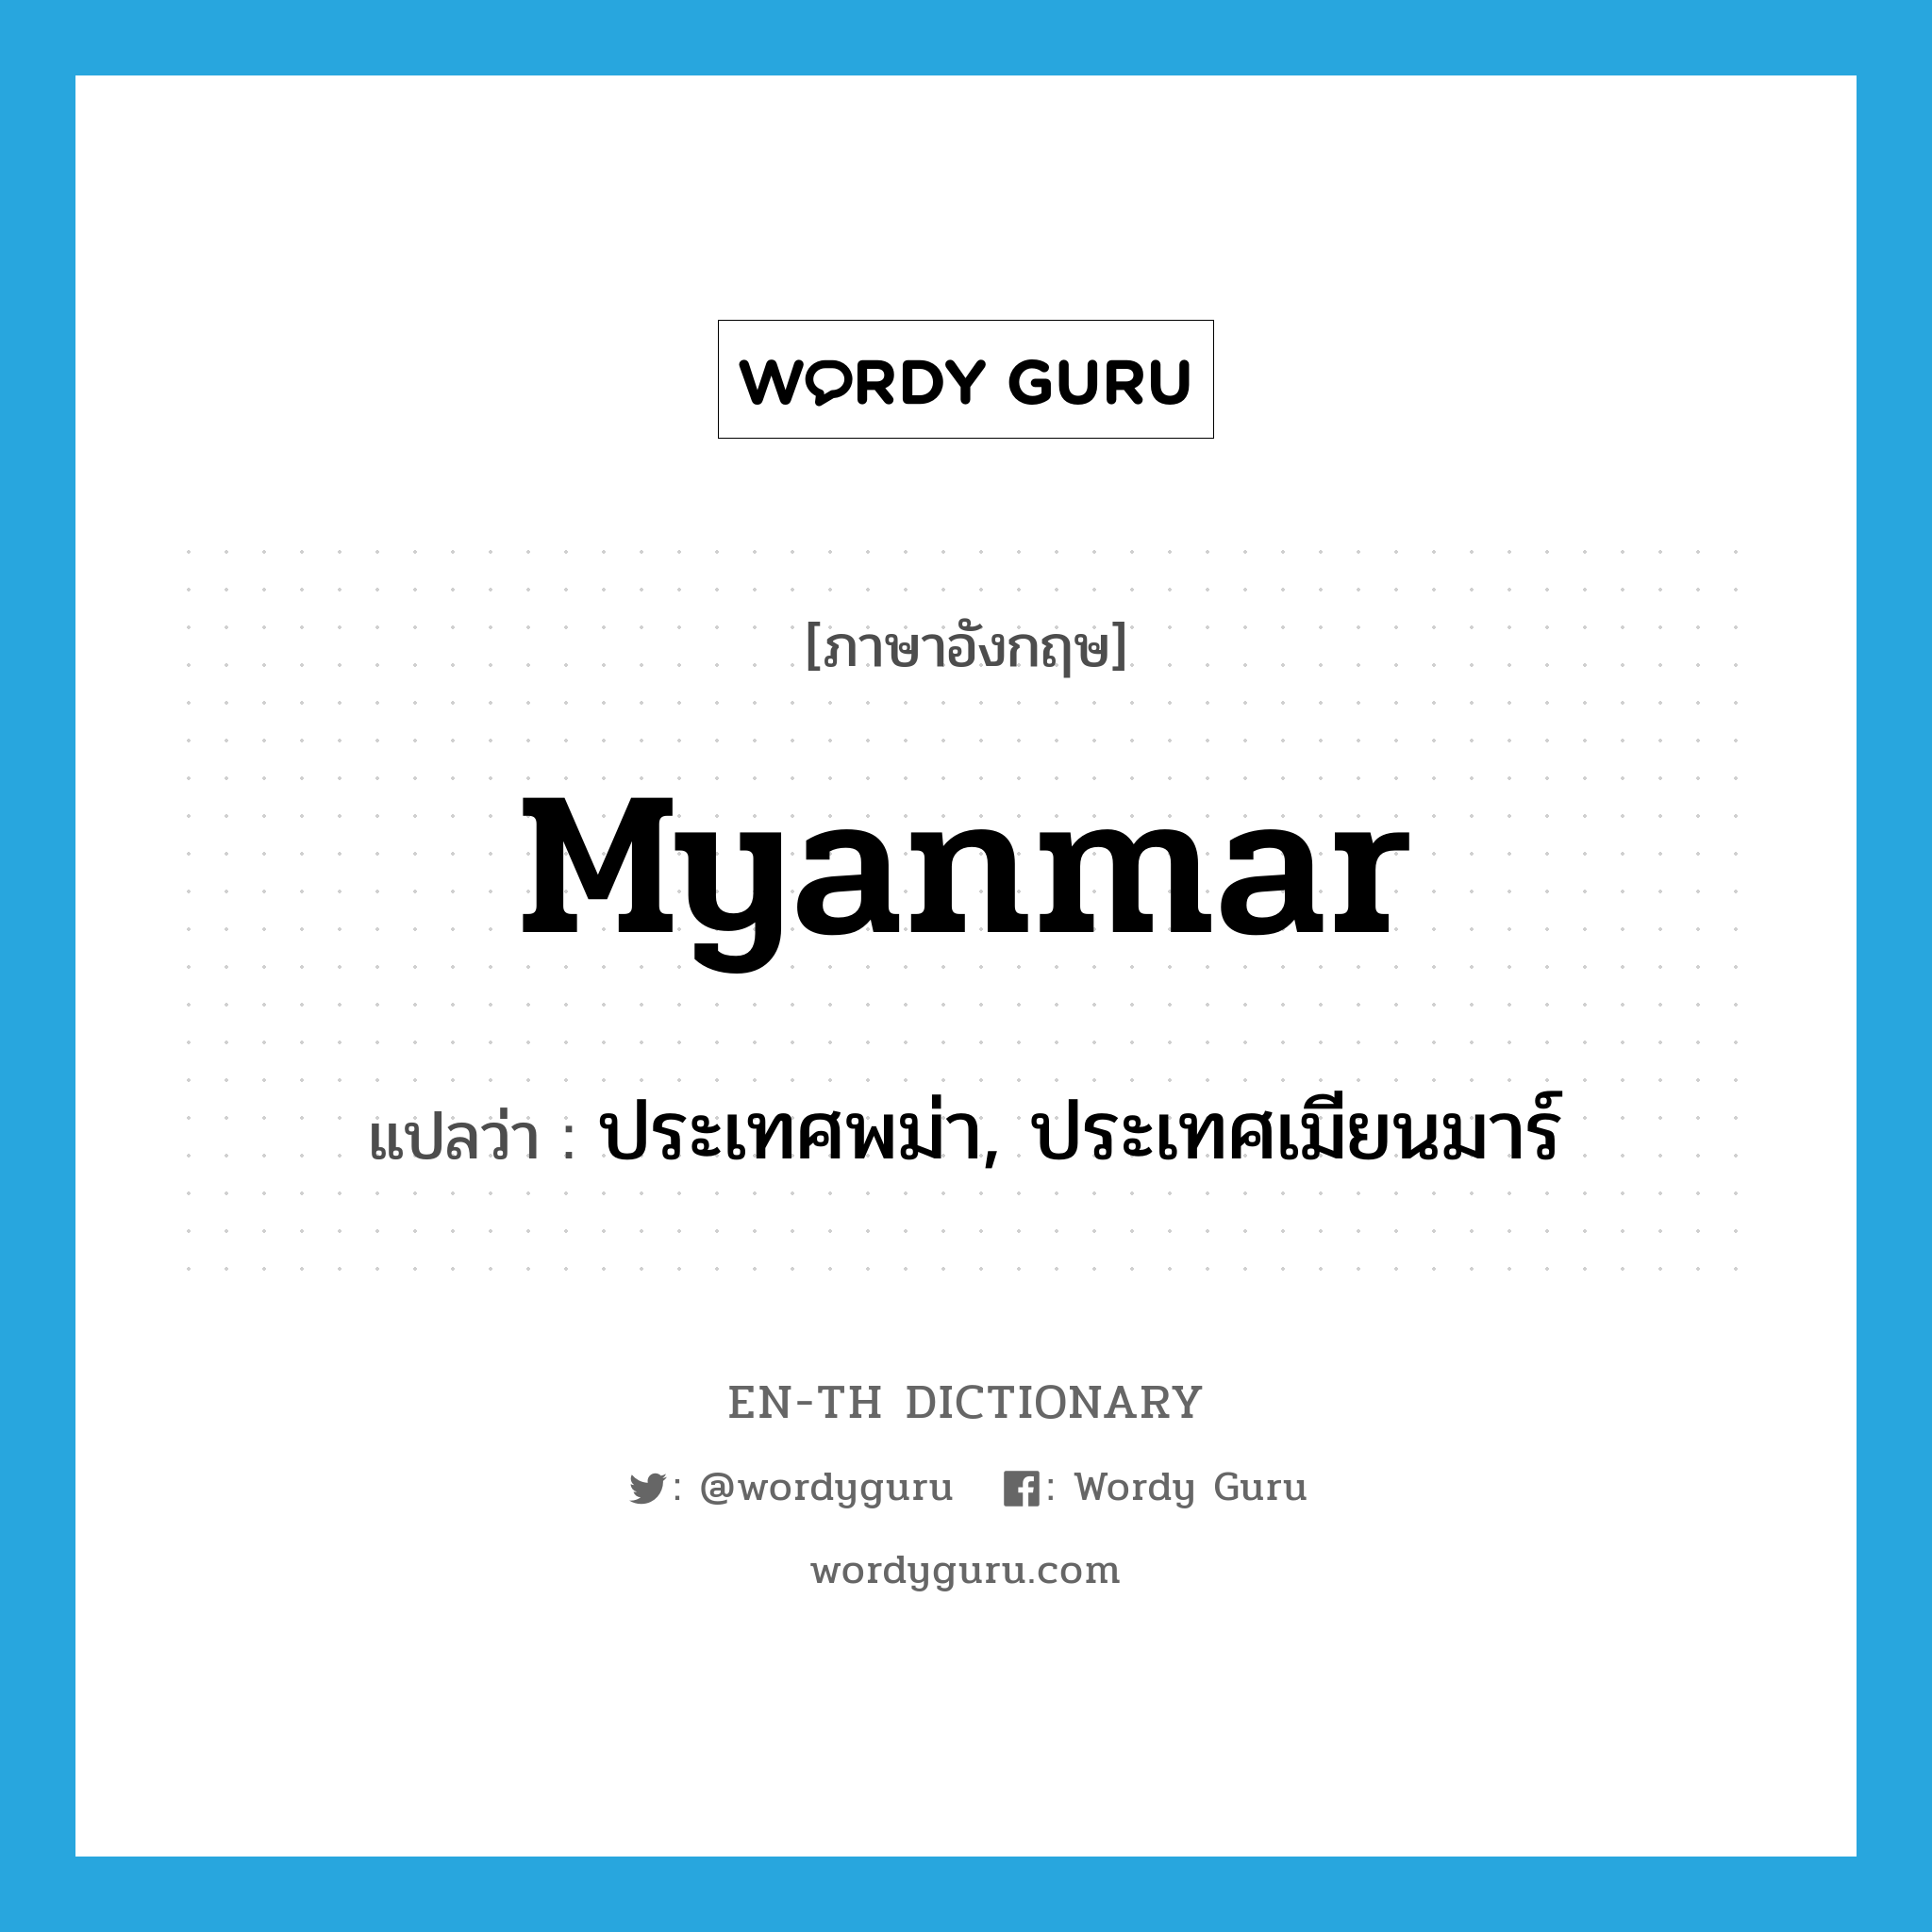 ประเทศพม่า, ประเทศเมียนมาร์ ภาษาอังกฤษ?, คำศัพท์ภาษาอังกฤษ ประเทศพม่า, ประเทศเมียนมาร์ แปลว่า Myanmar ประเภท N หมวด N